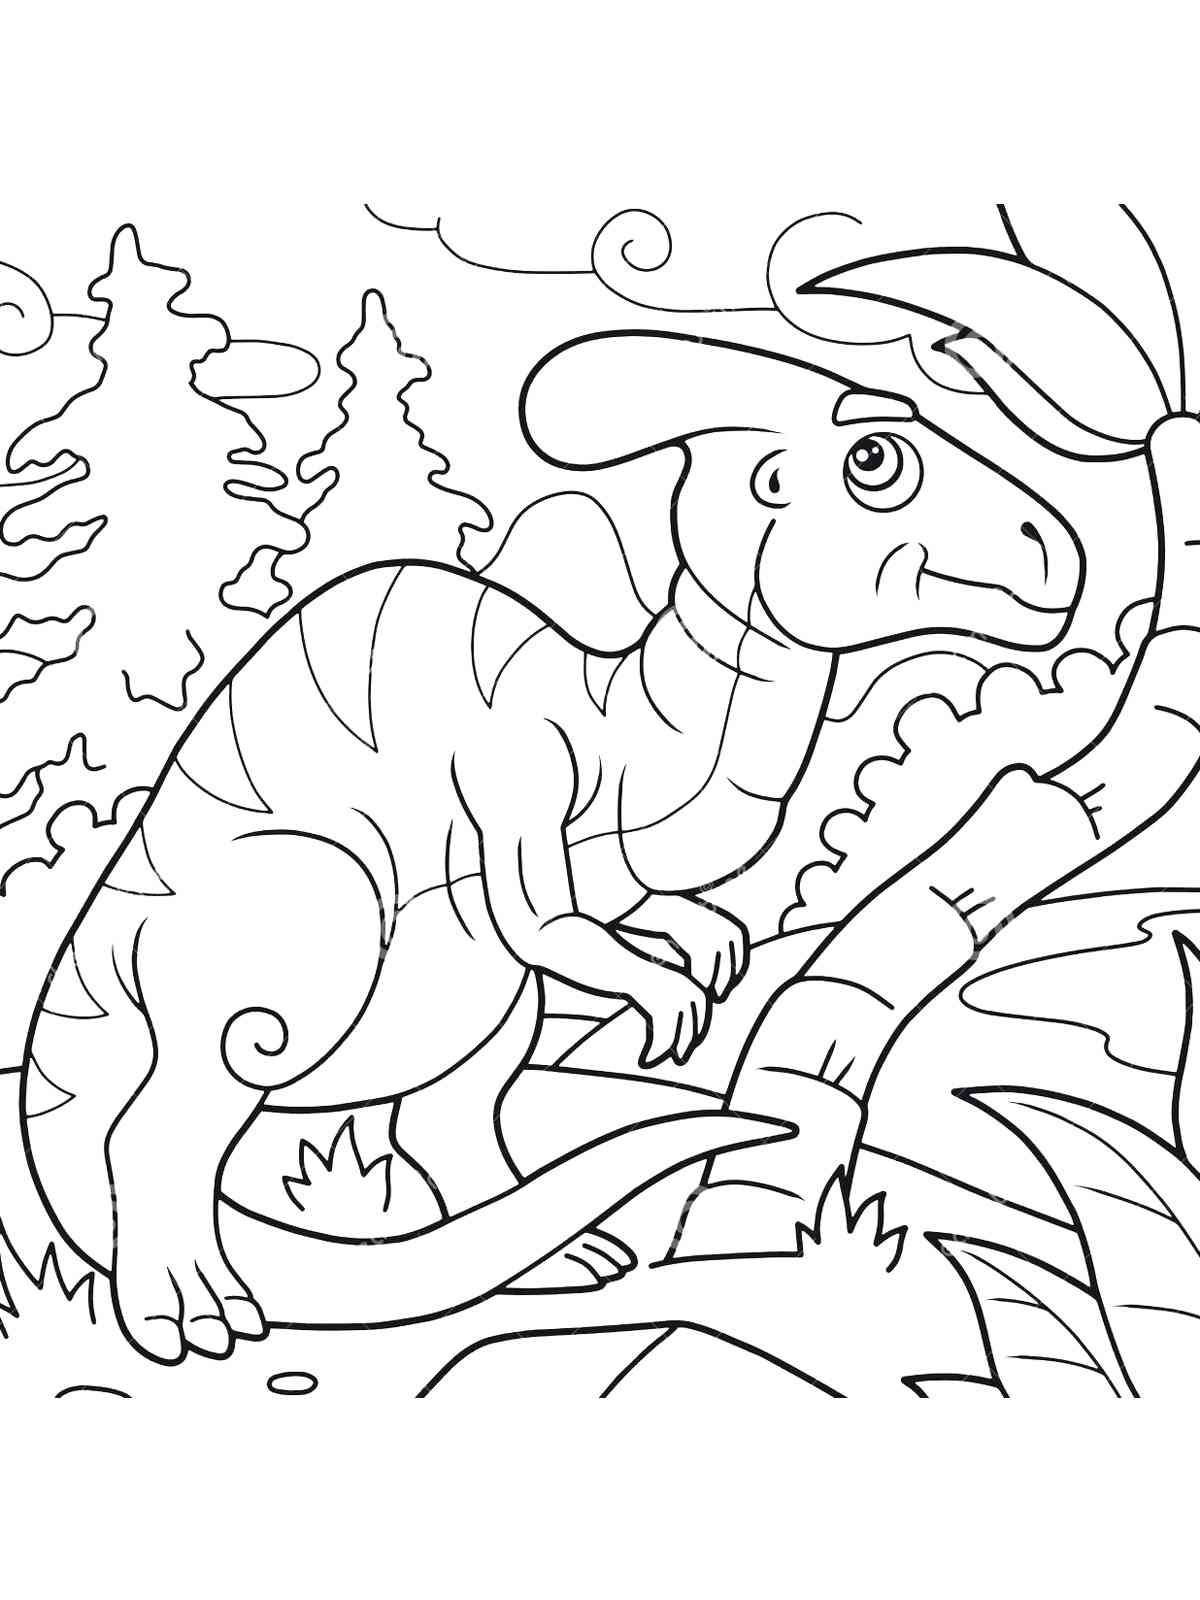 Cartoon Parasaurolophus coloring page